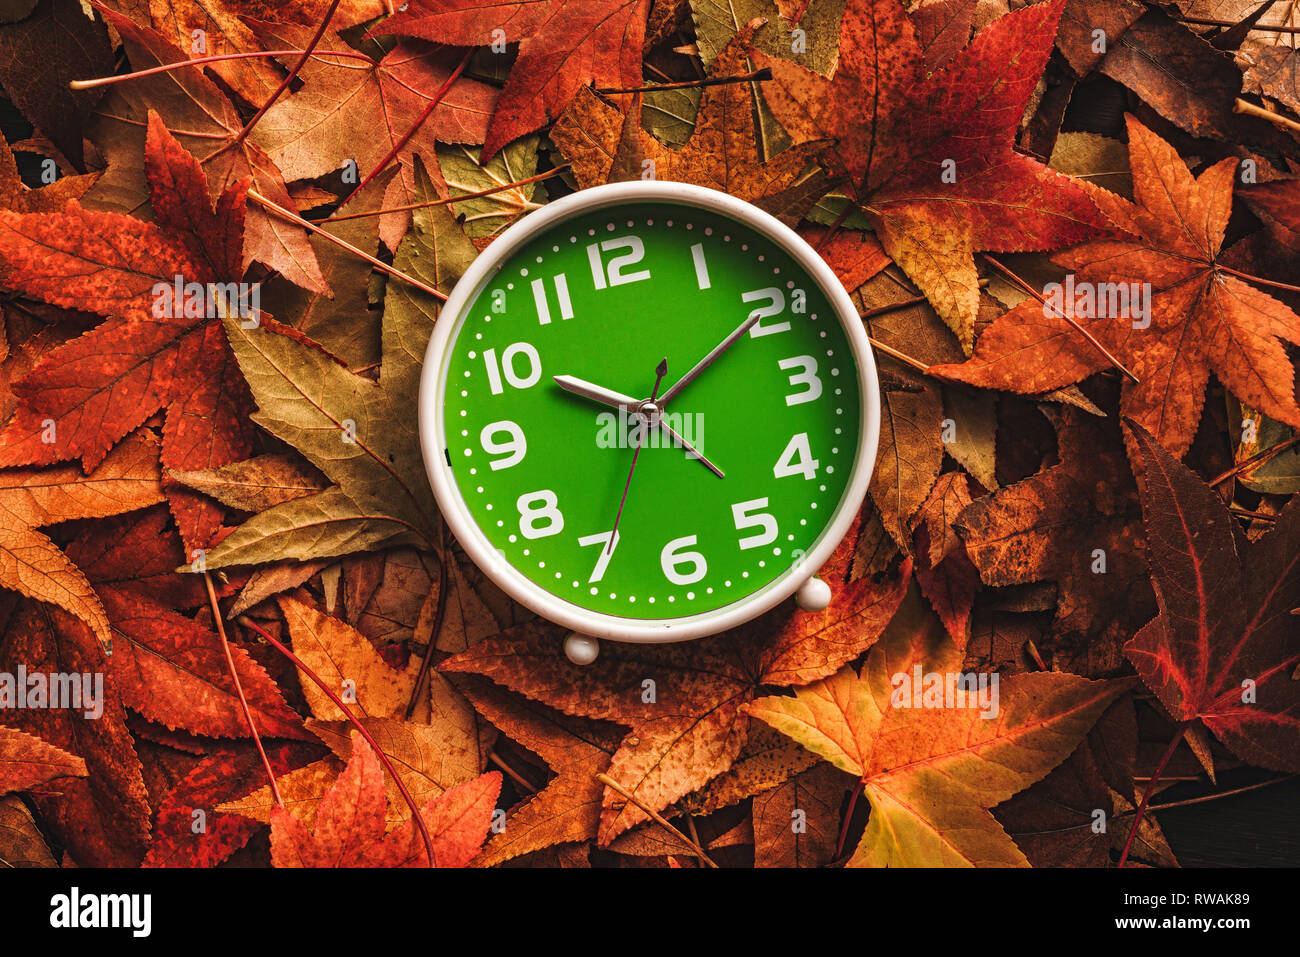 La saison d'automne, temps retro vintage réveil dans les feuilles d'automne - concept de l'heure d'été Banque D'Images